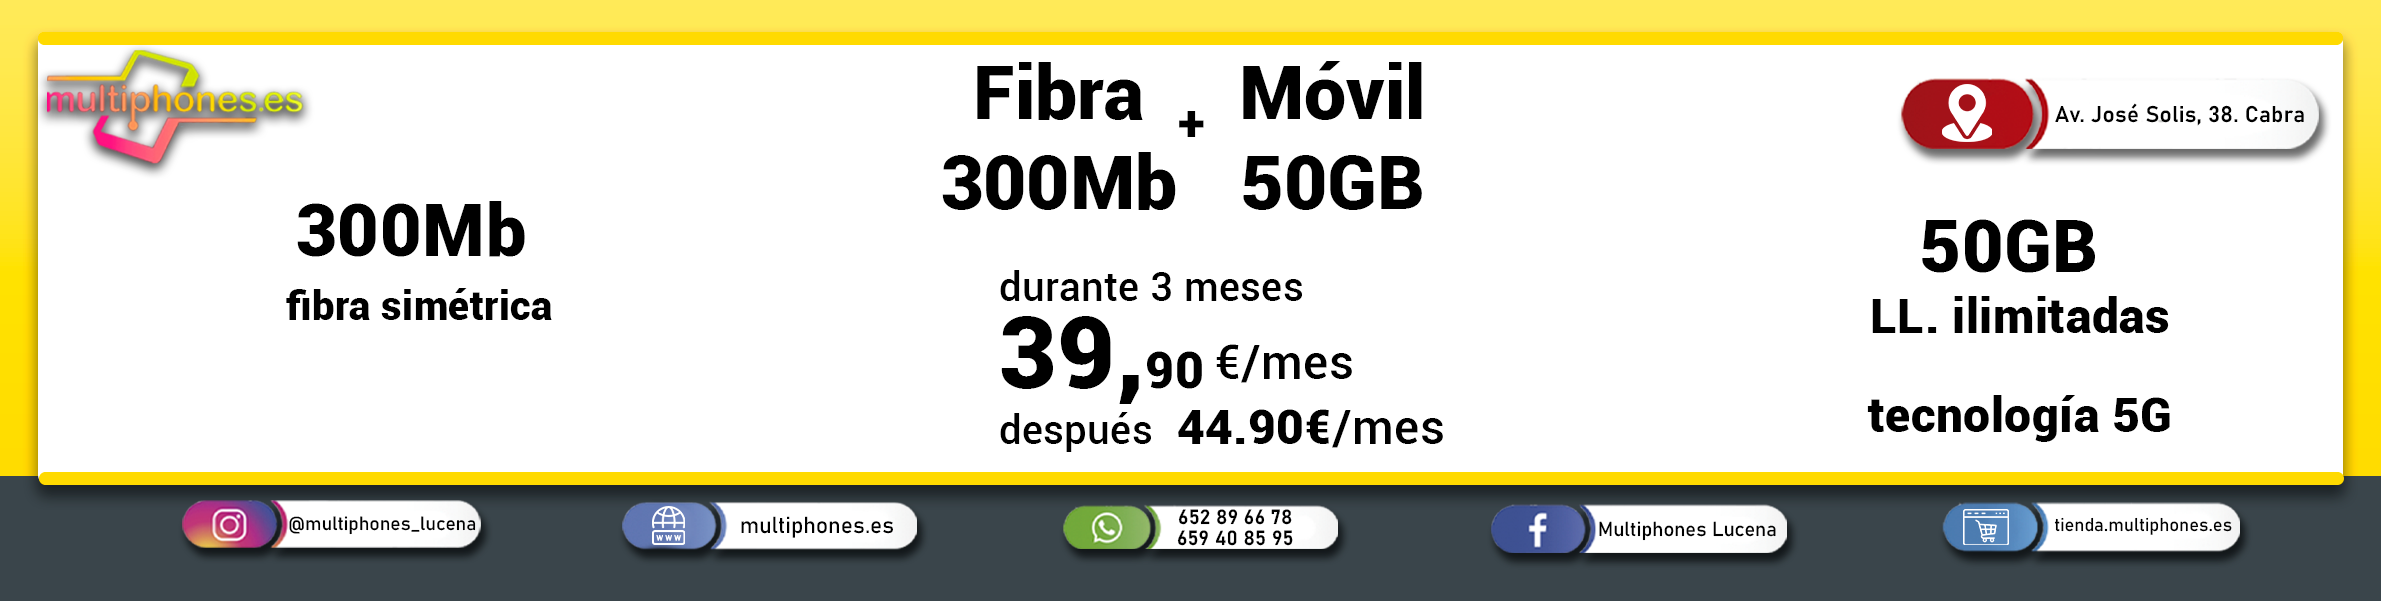 MASMOVIL- FIBRA 300, FIJO Y MÓVIL 50GB y llamadas ilimitadas.